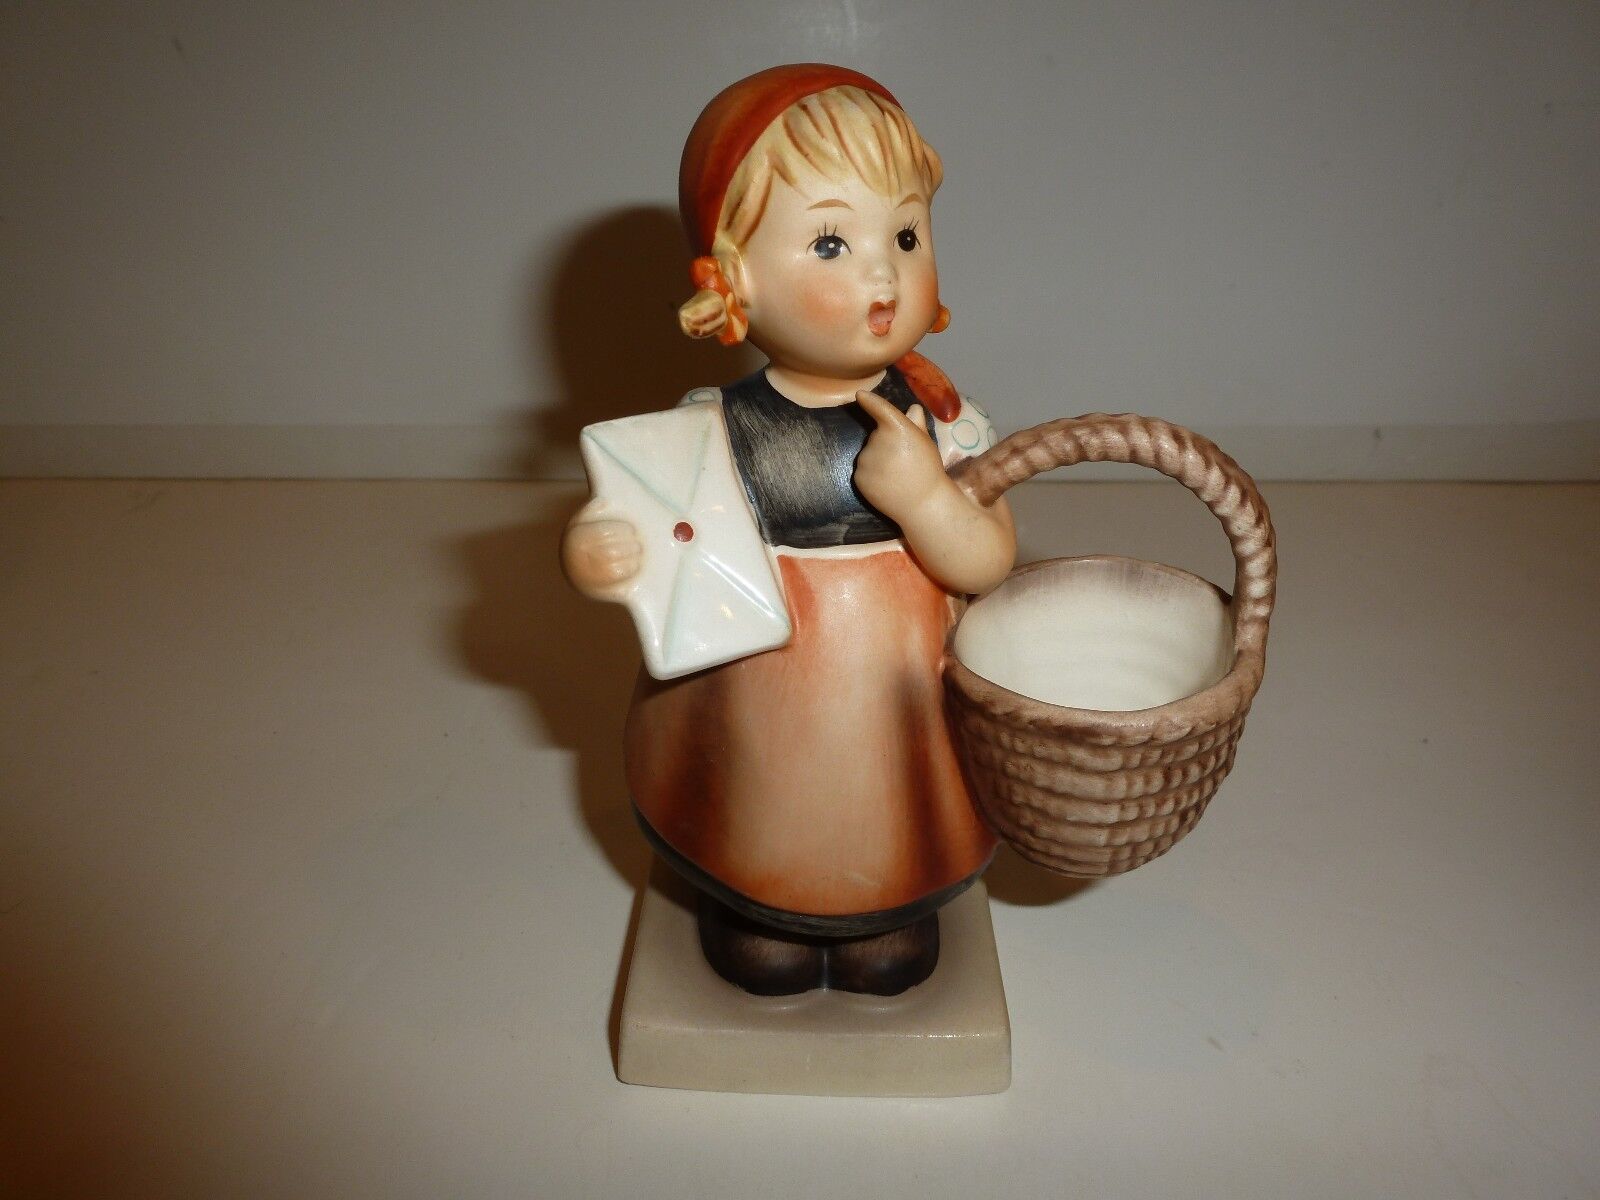 Vintage Hummel West Germany Meditation Figurine, Girl with Basket